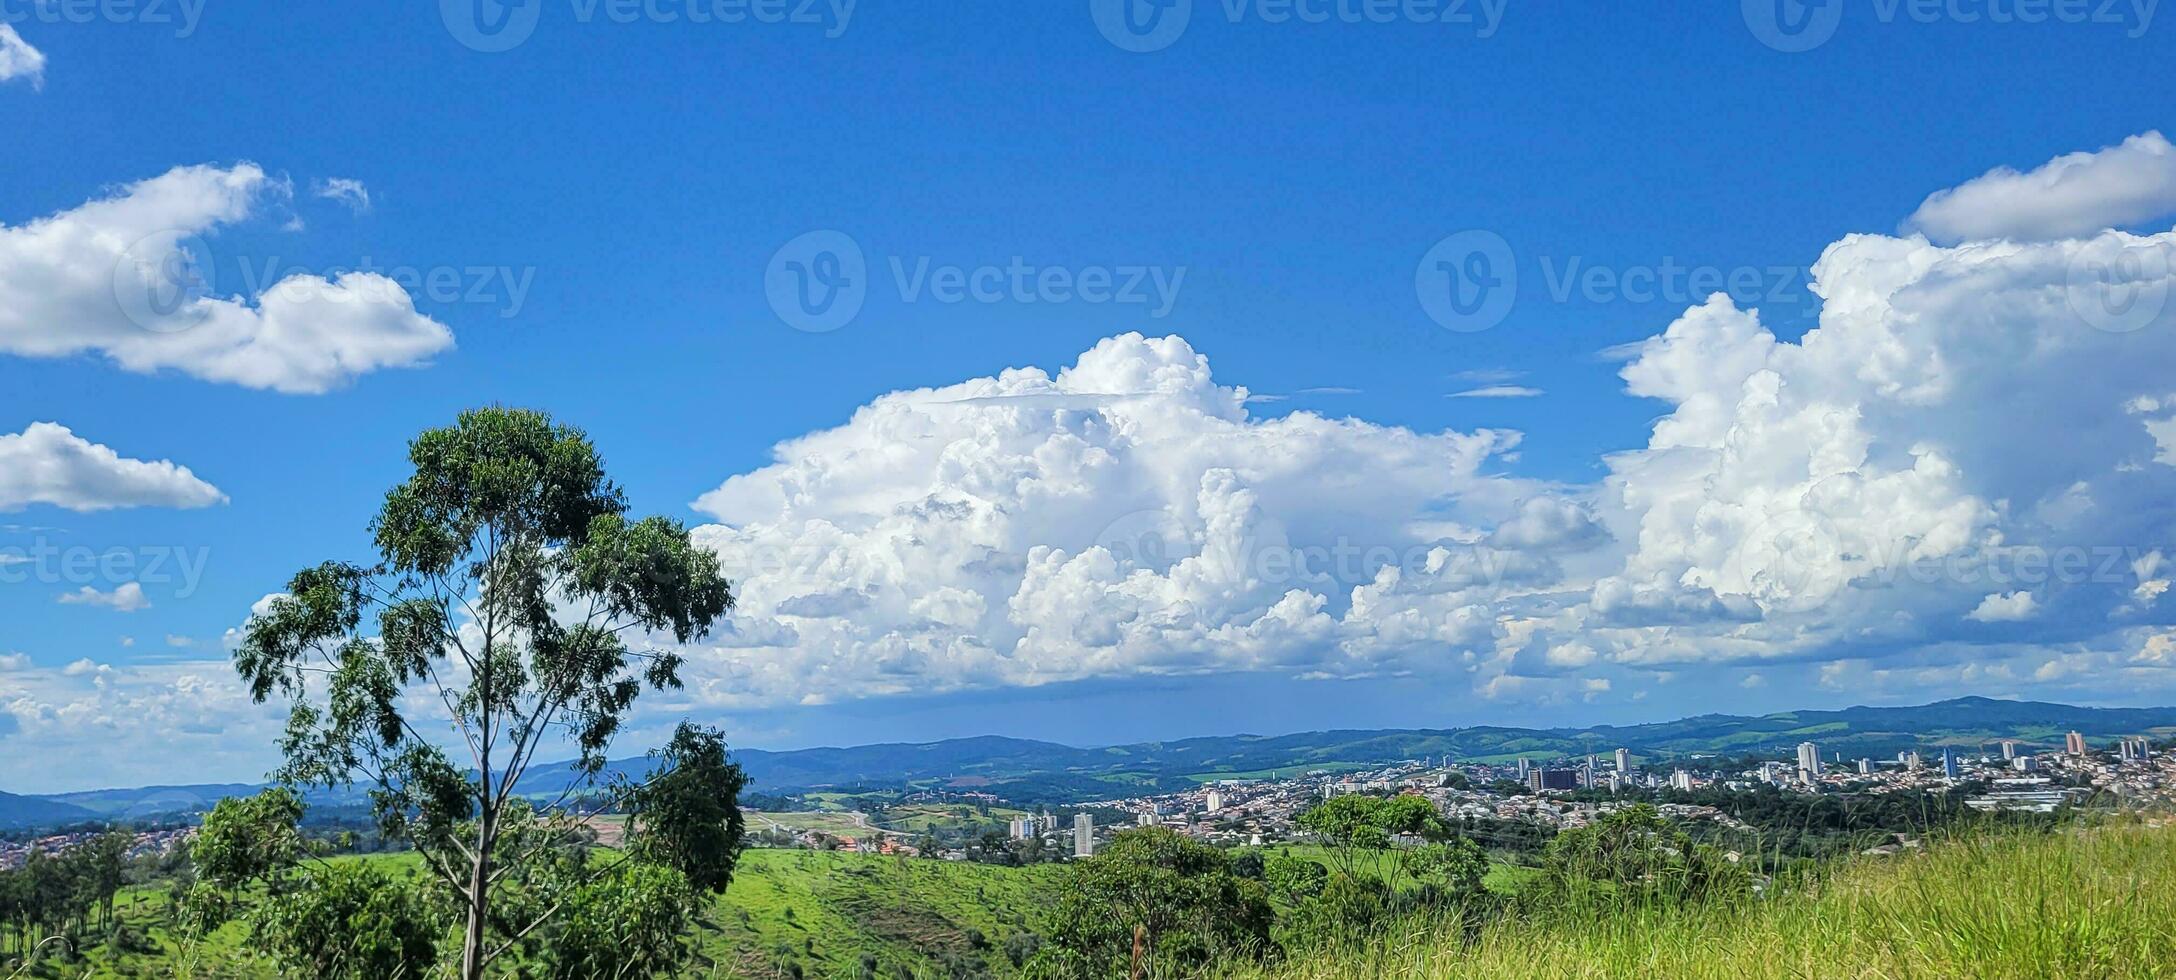 Immagine di montagne nel il interno di brasile foto